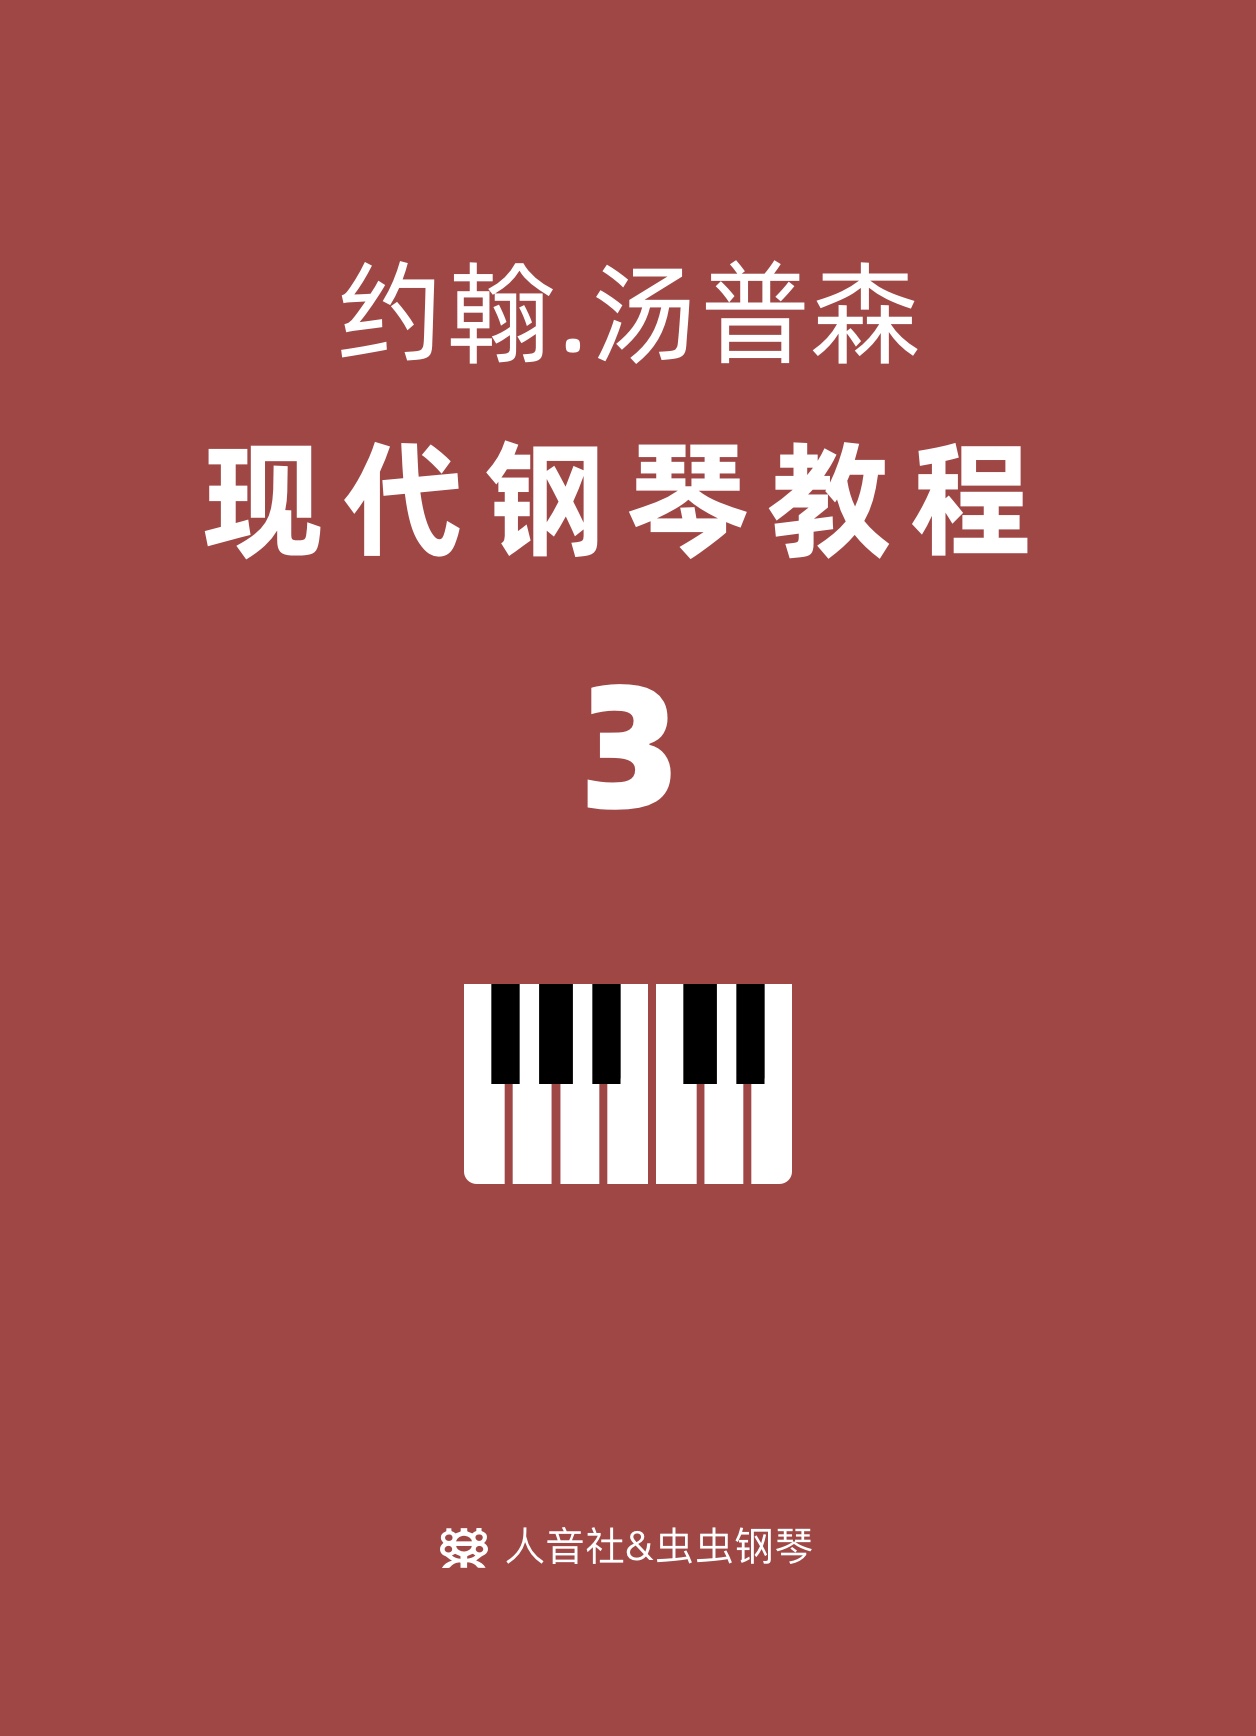 约翰汤普森 现代钢琴教程3-钢琴谱